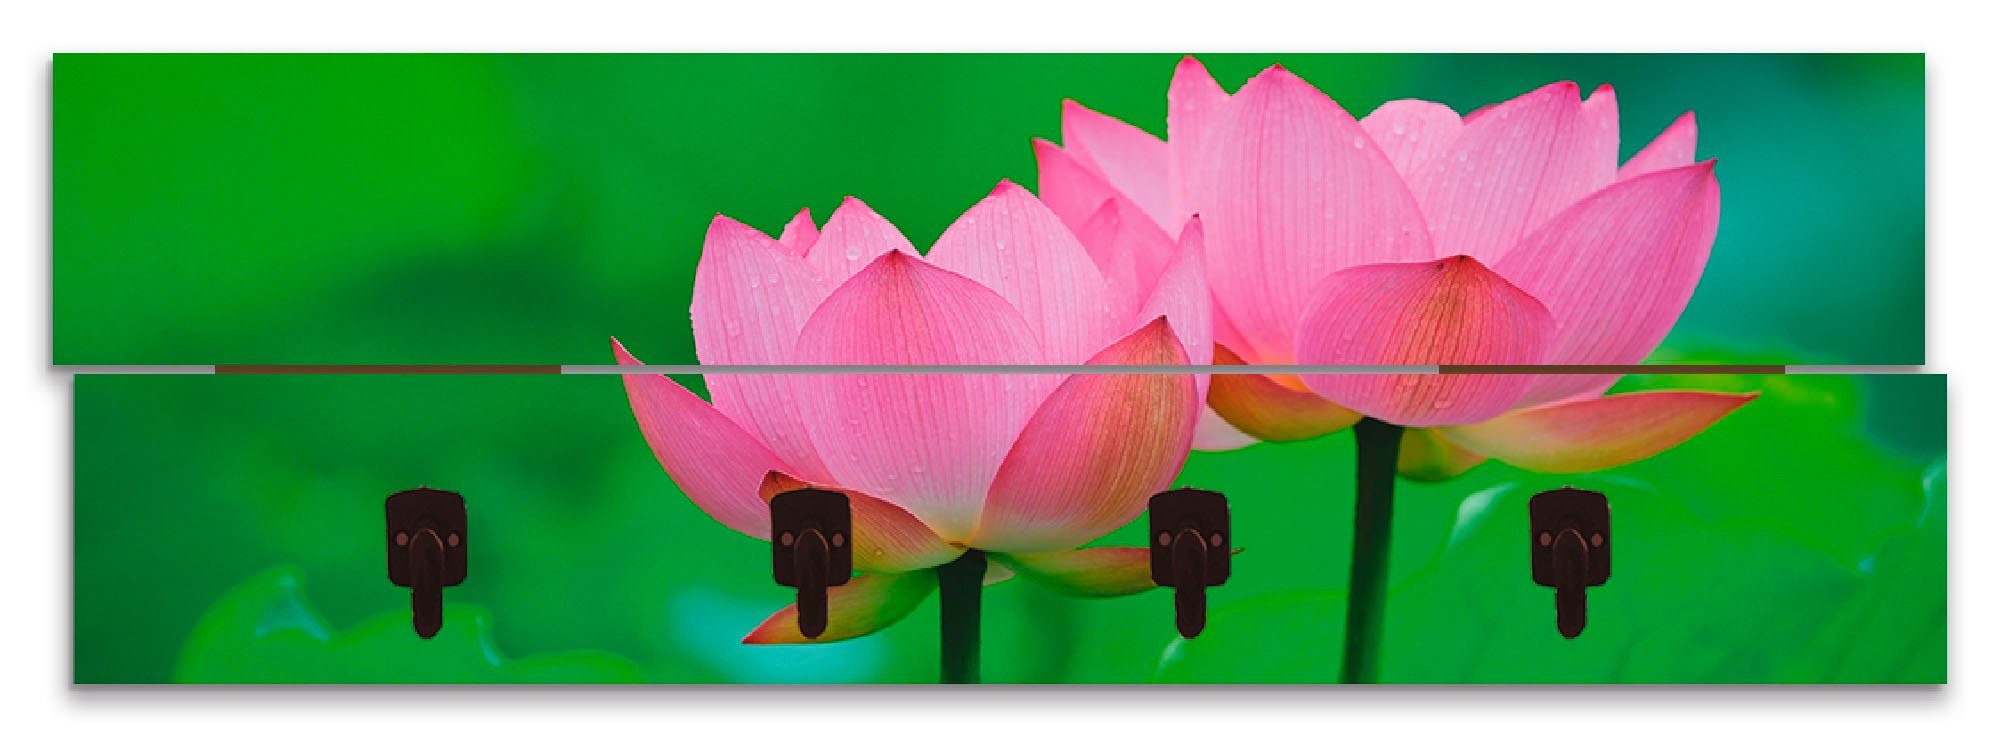 Artland Kapstokpaneel Bloeiende lotusbloem ruimtebesparende kapstok van hout met 4 haken, geschikt voor kleine, smalle hal, halkapstok